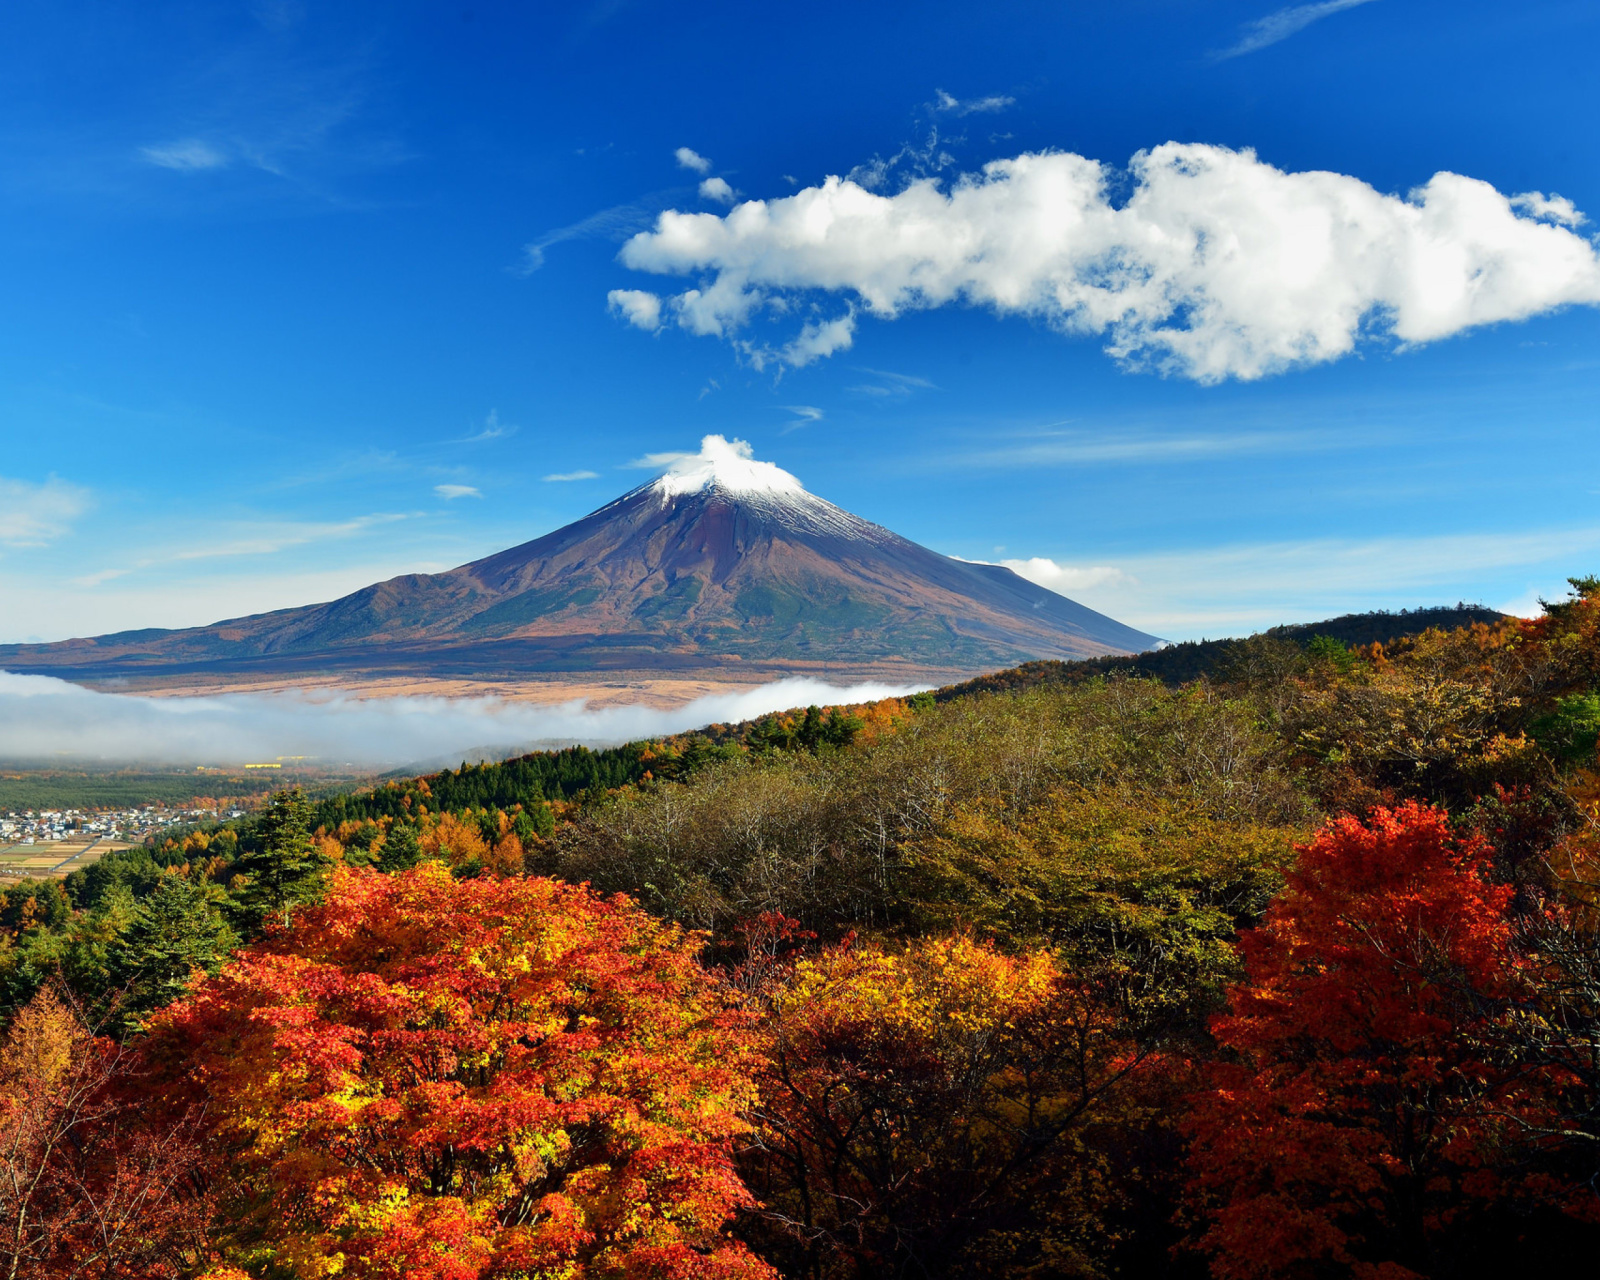 Mount Fuji 3776 Meters screenshot #1 1600x1280